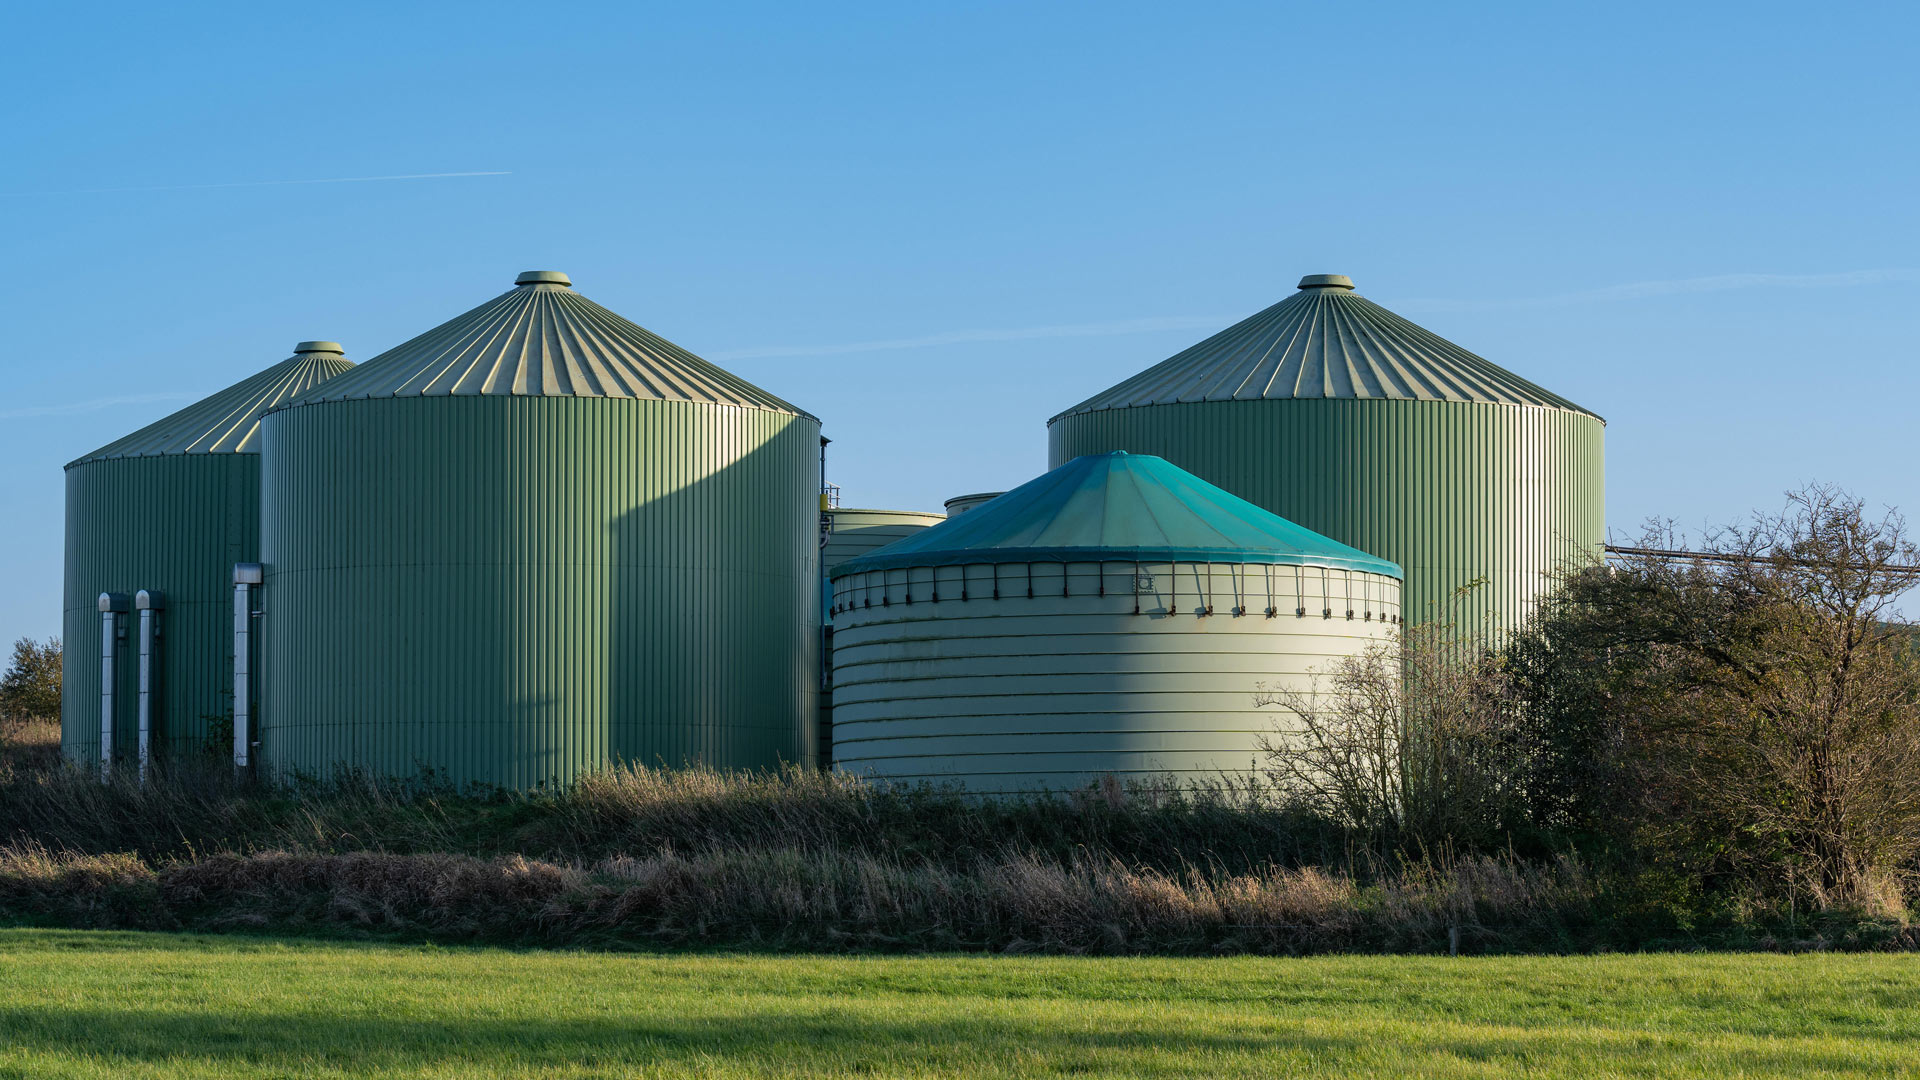 Biogasanlage  | picture alliance / Zoonar